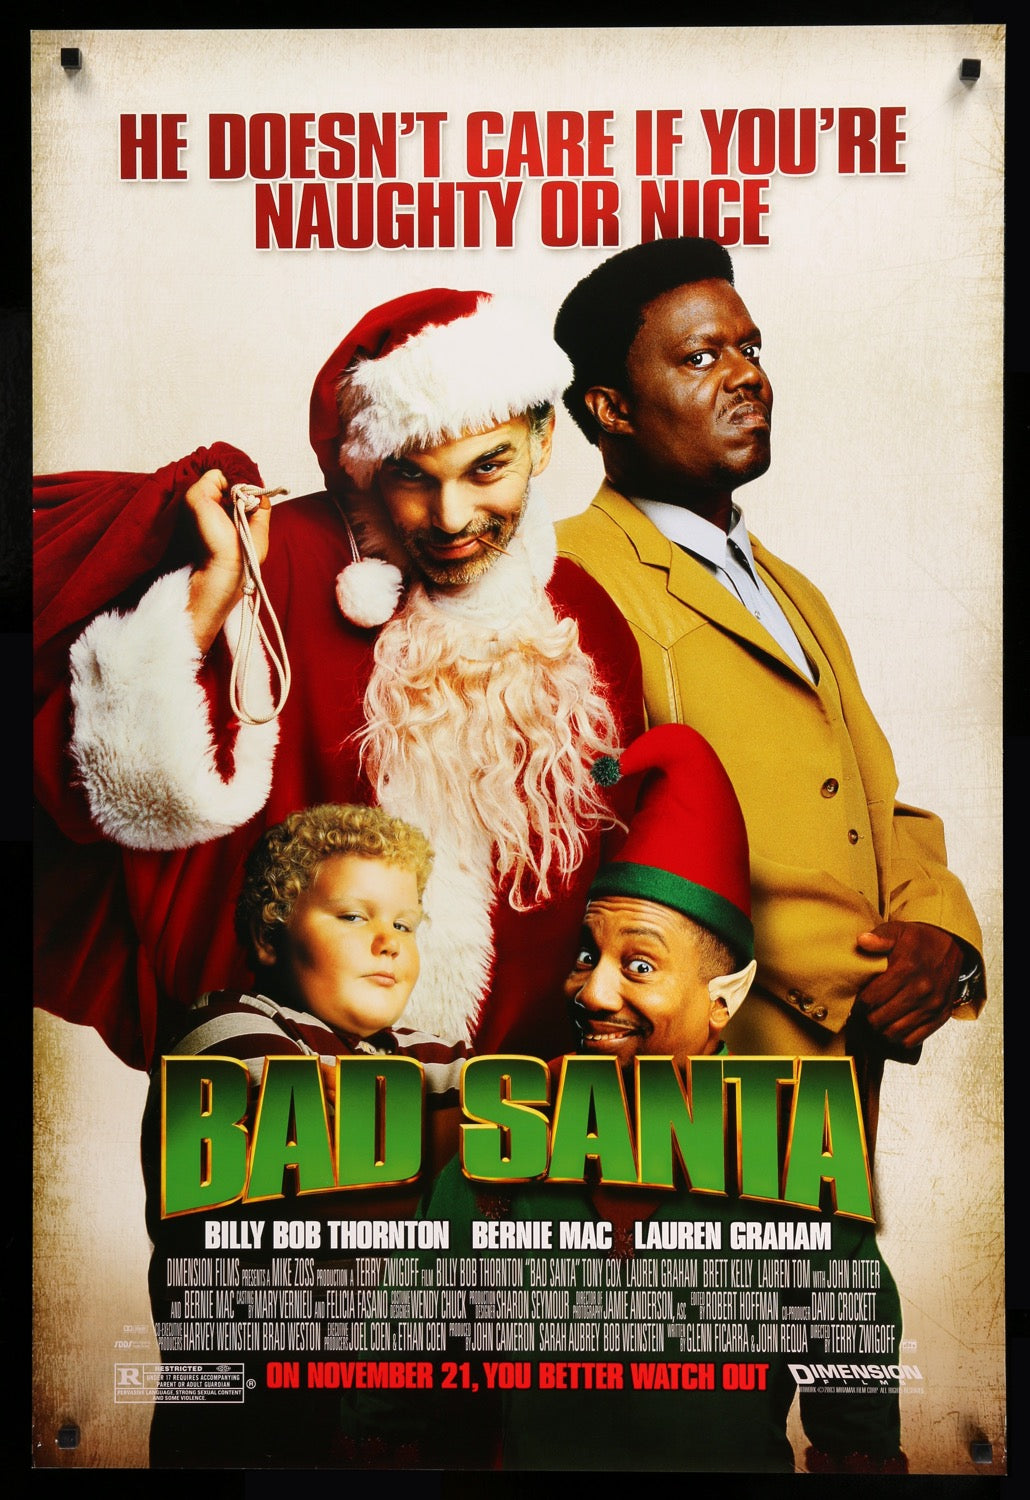 Bad Santa (2003) original movie poster for sale at Original Film Art